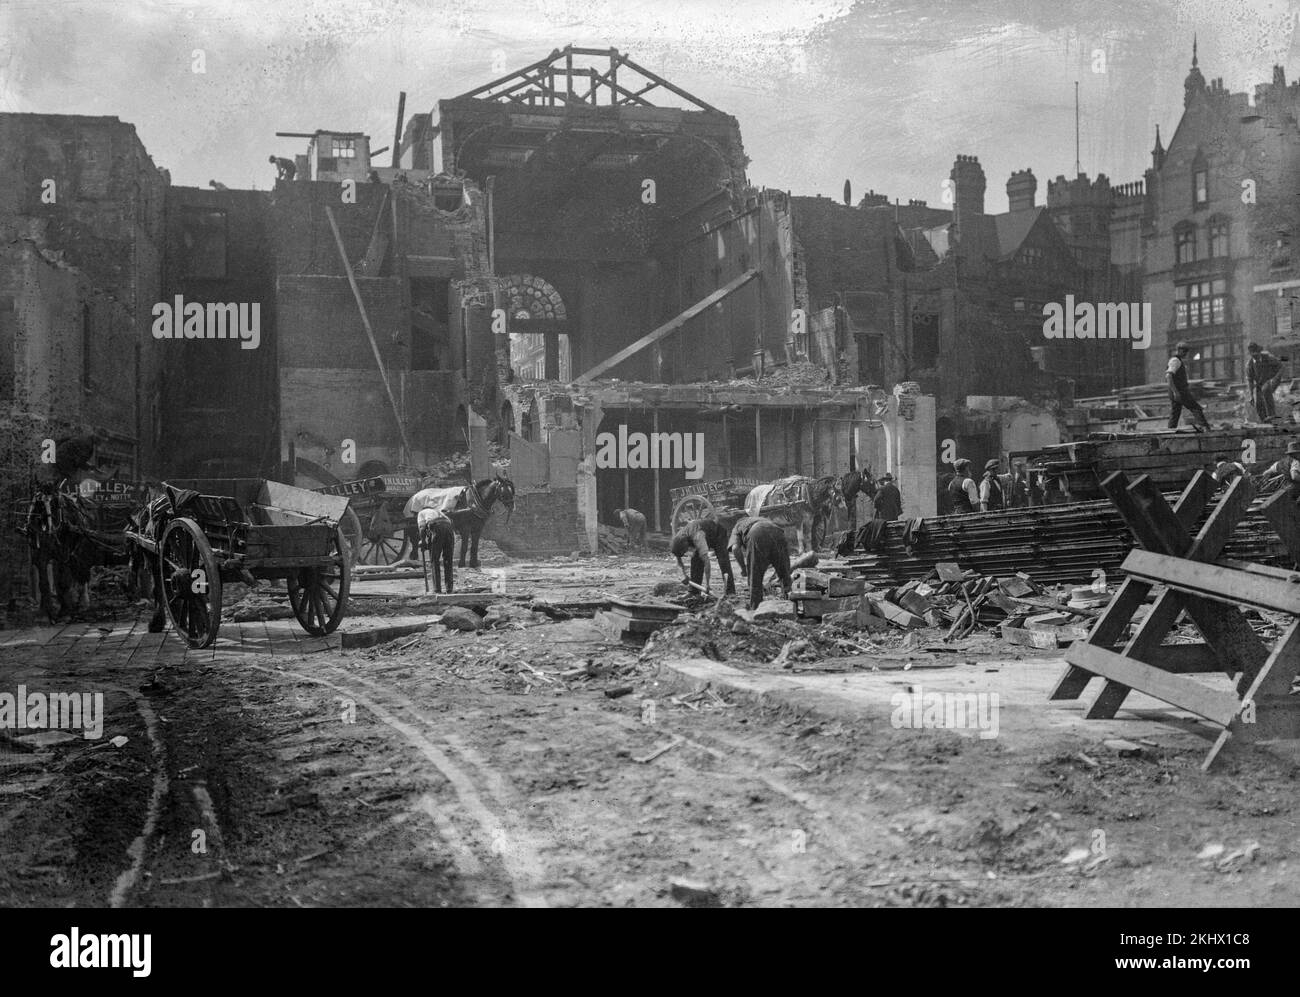 Fotografía en blanco y negro de finales de la época victoriana o principios de la época eduardiana que muestra a los trabajadores en un edificio de Nottingham, Inglaterra, rodeado de edificios antiguos. Foto de stock